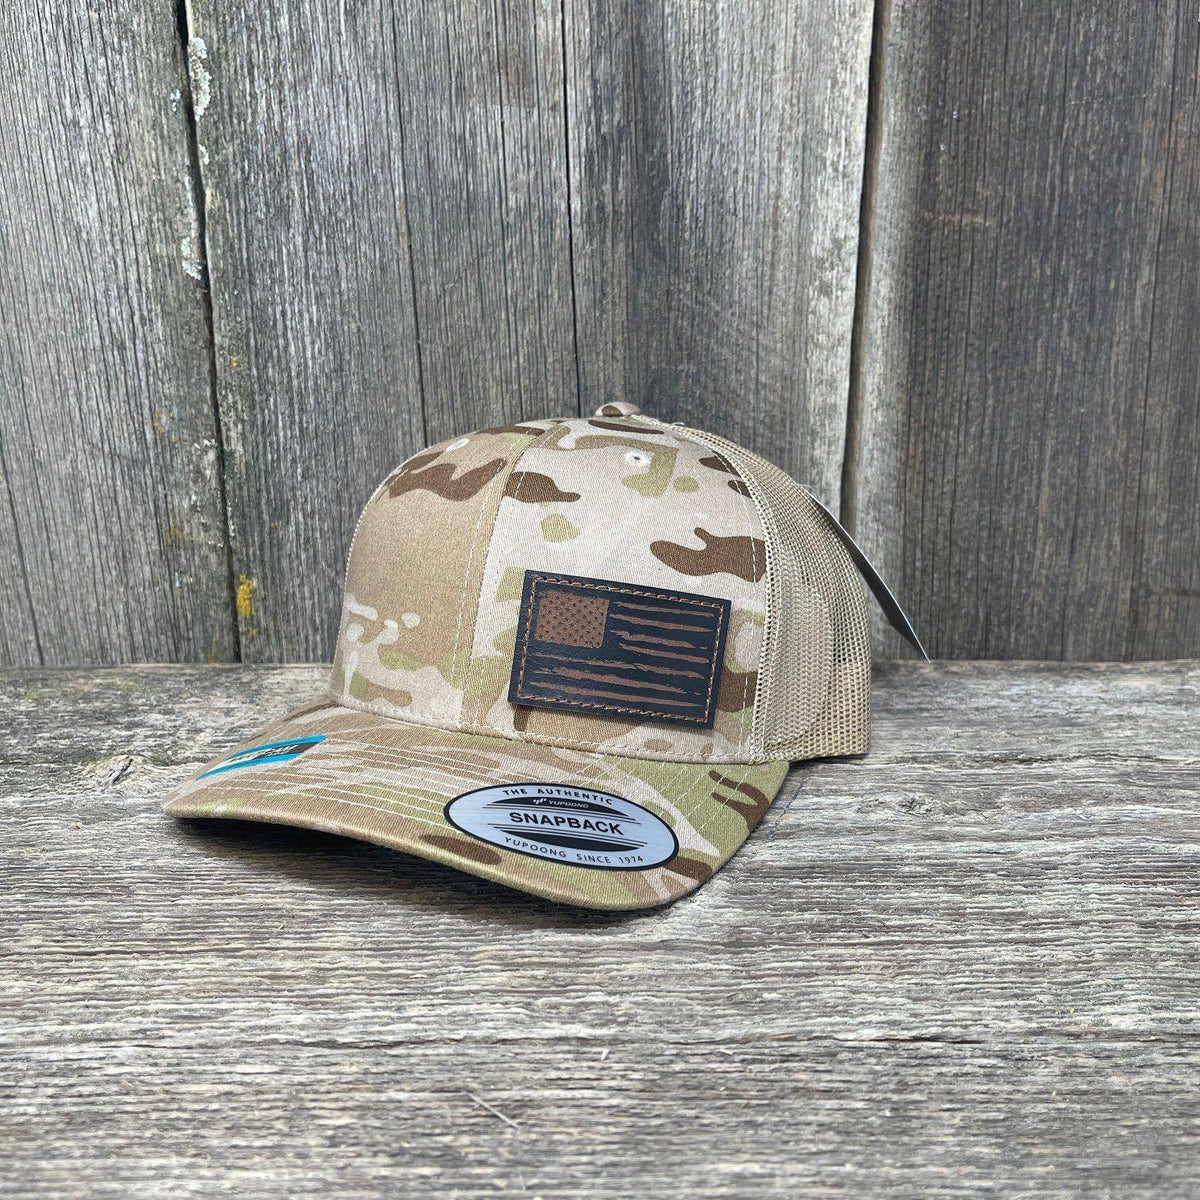 Build A Kryptek/Multicam Tactical Cap - Choose Hat & 2 Patches